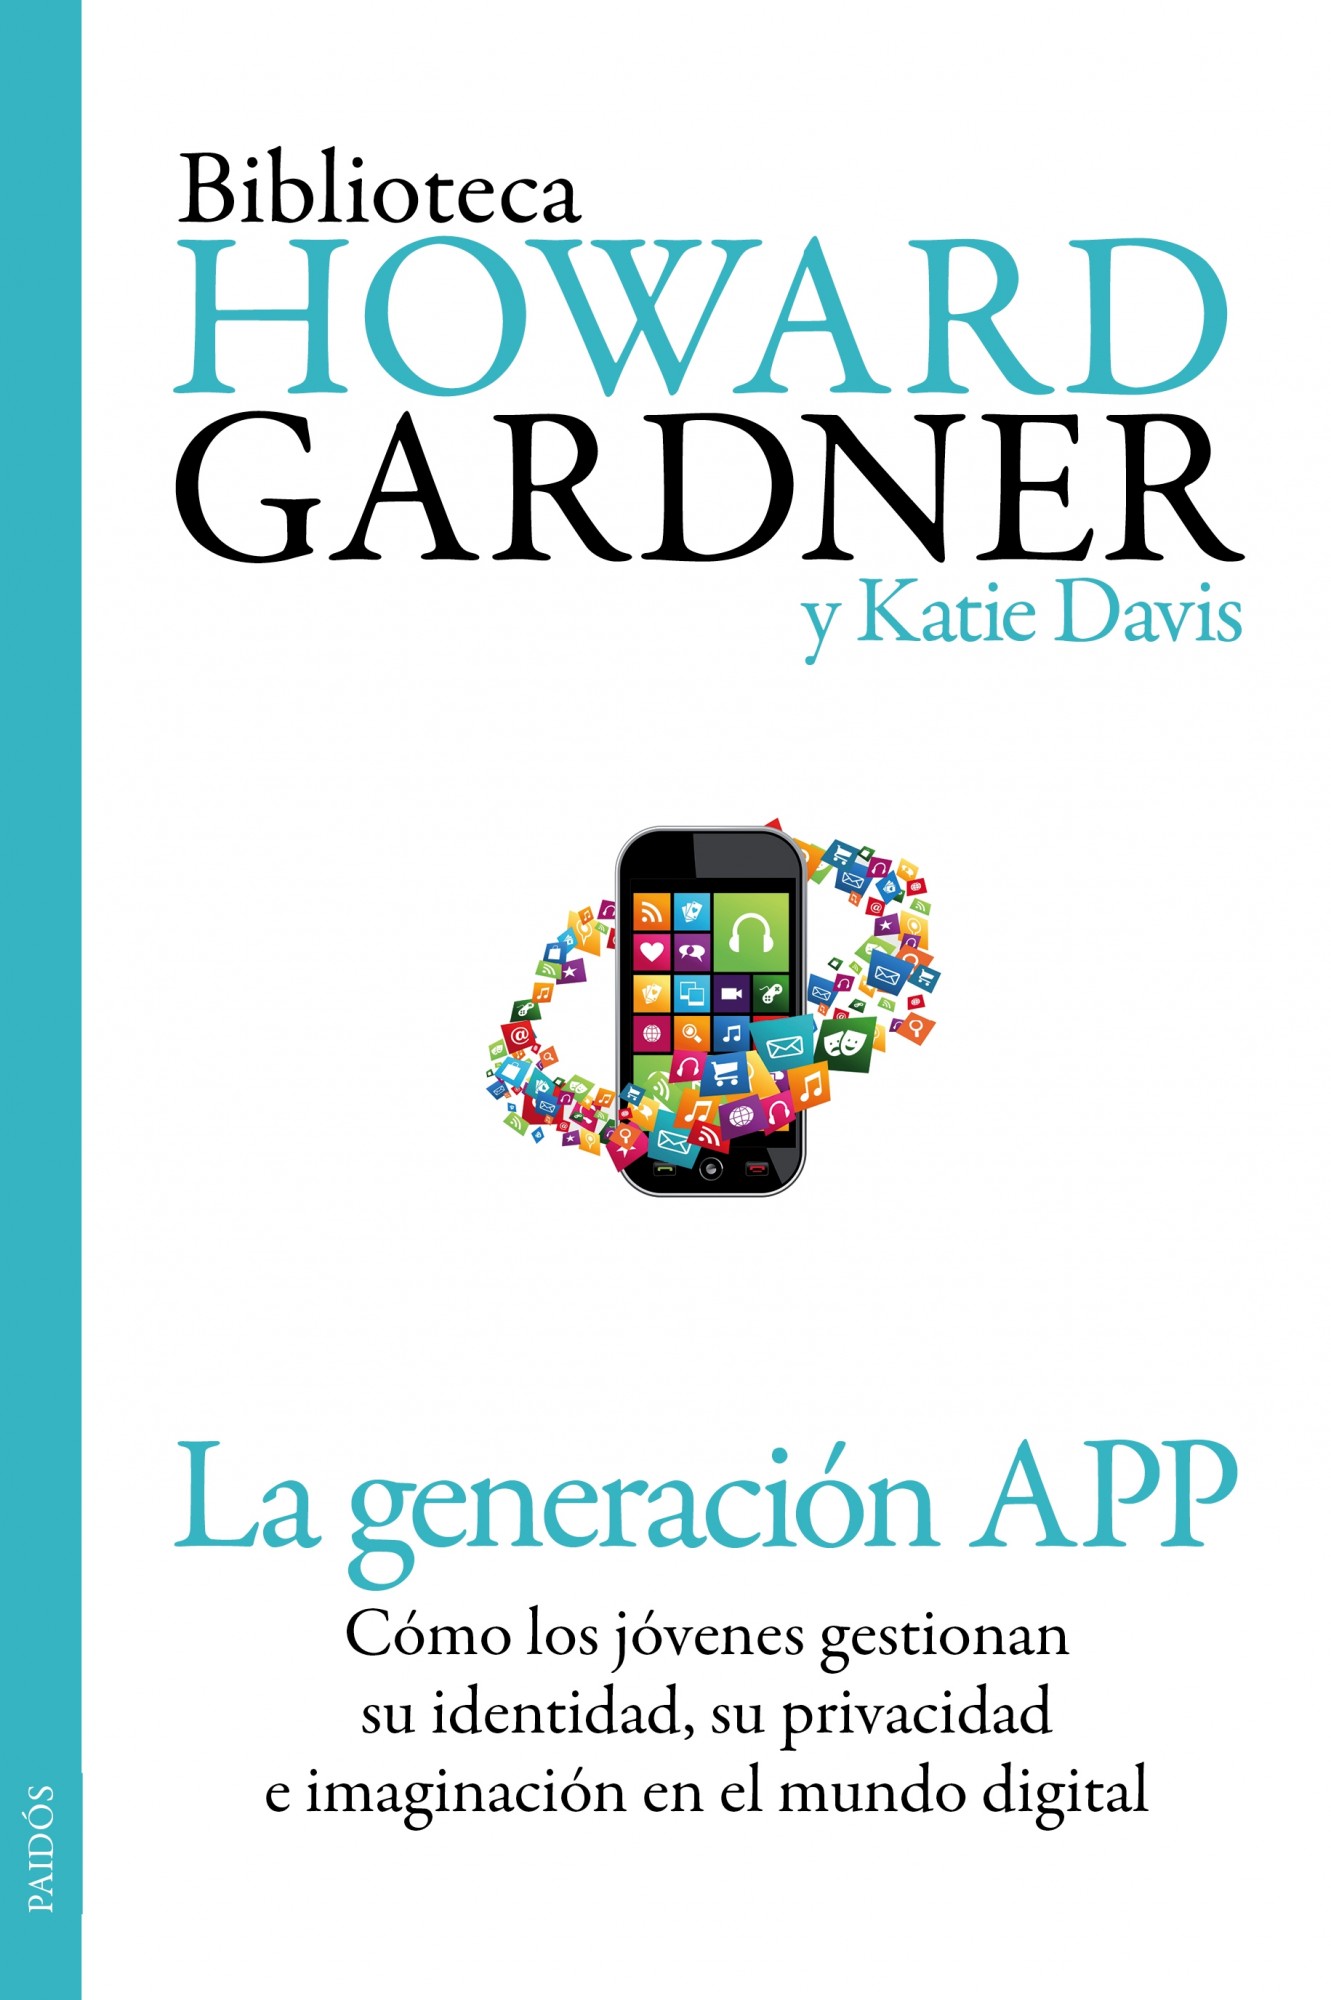 La generación app: cómo los jóvenes gestionan su identidad, su privacidad y su imaginación en el mundo digital